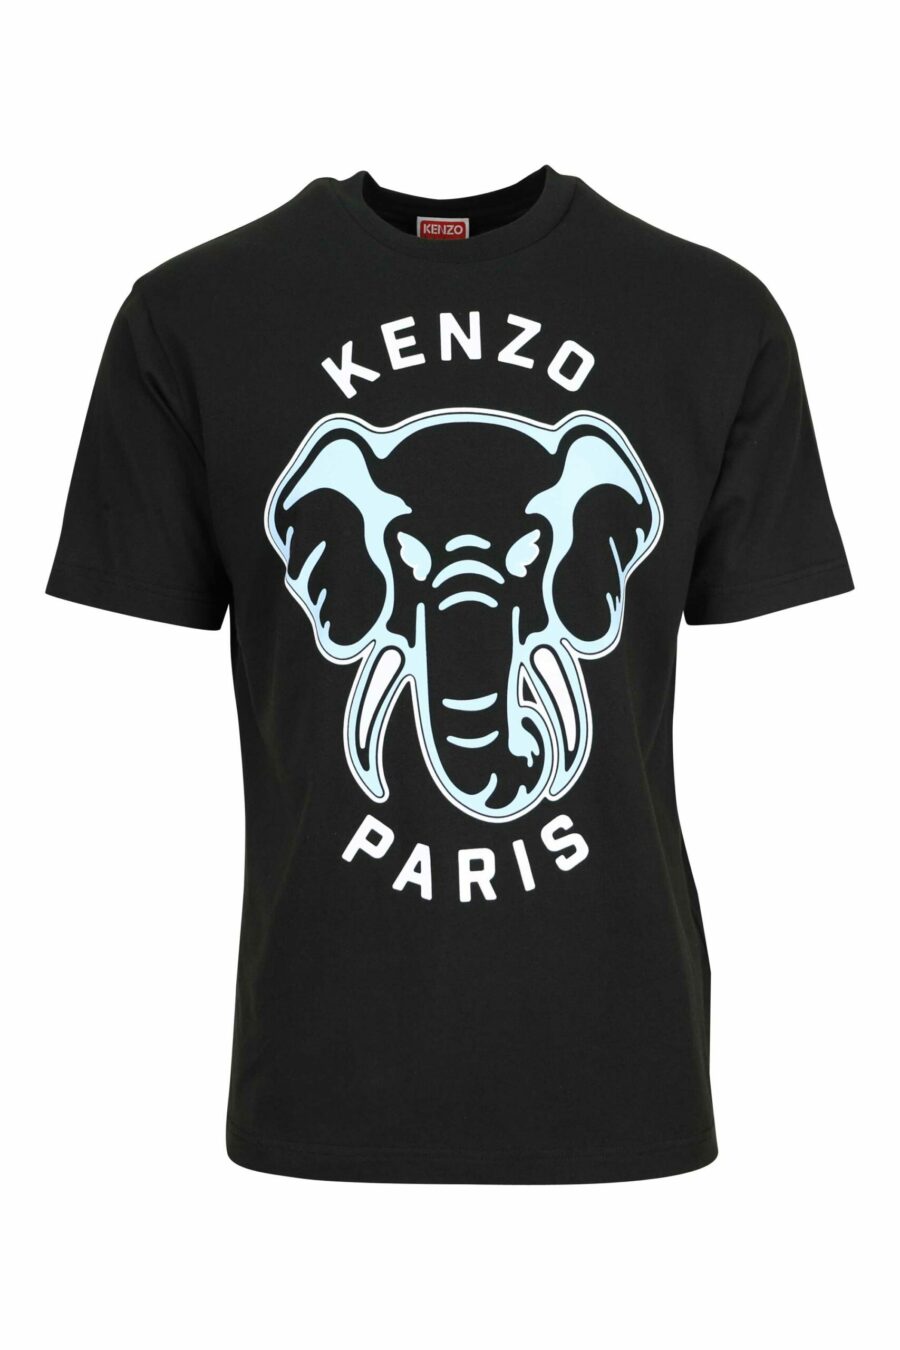 T-shirt preta com maxilogo "kenzo elephant" - 3612230625624 scaled